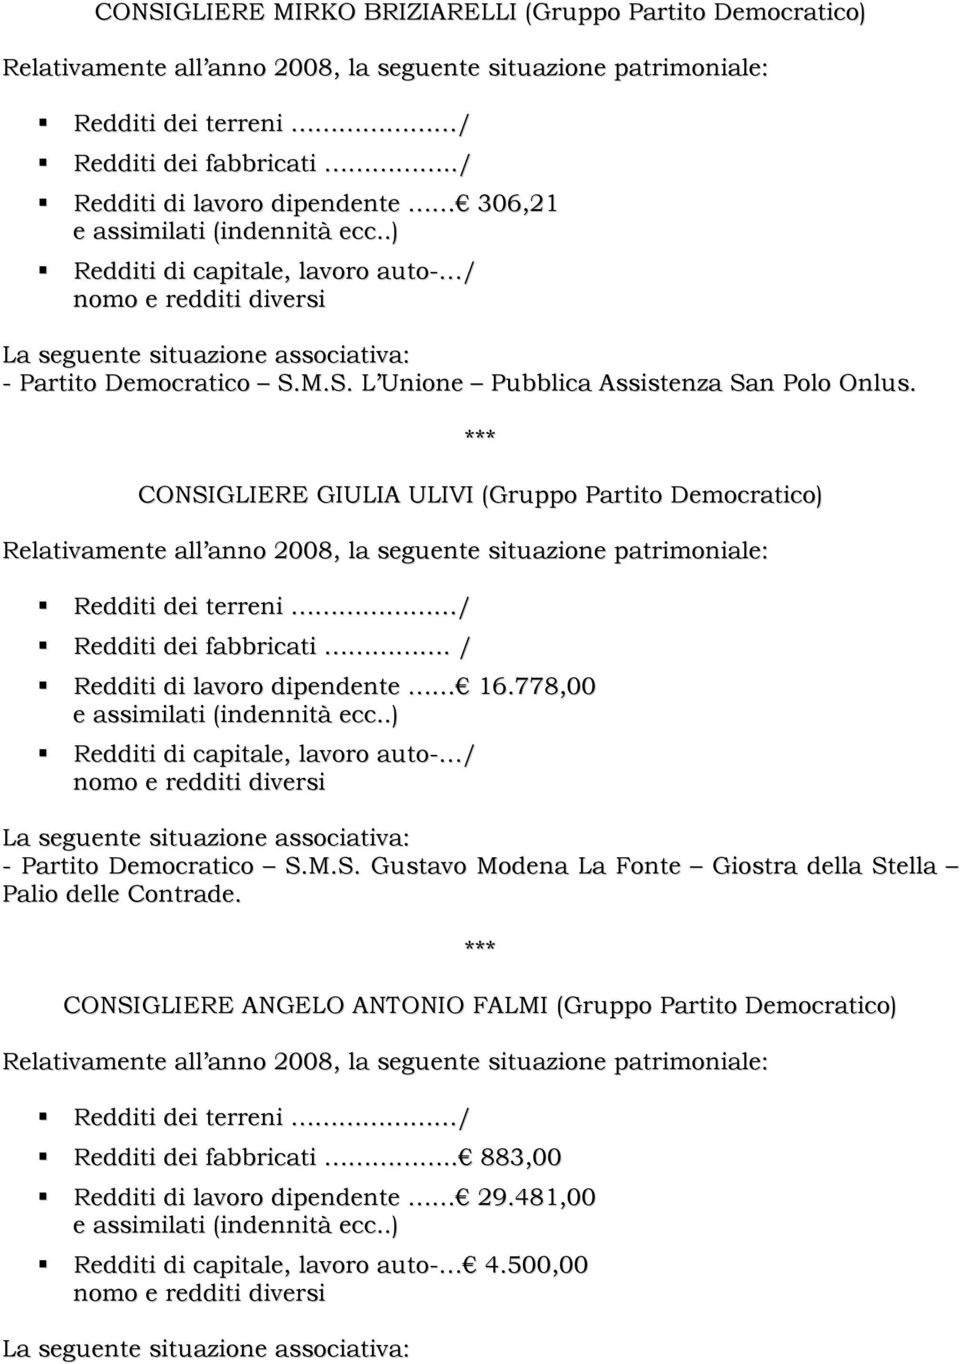 778,00 - Partito Democratico S.M.S. Gustavo Modena La Fonte Giostra della Stella Palio delle Contrade.